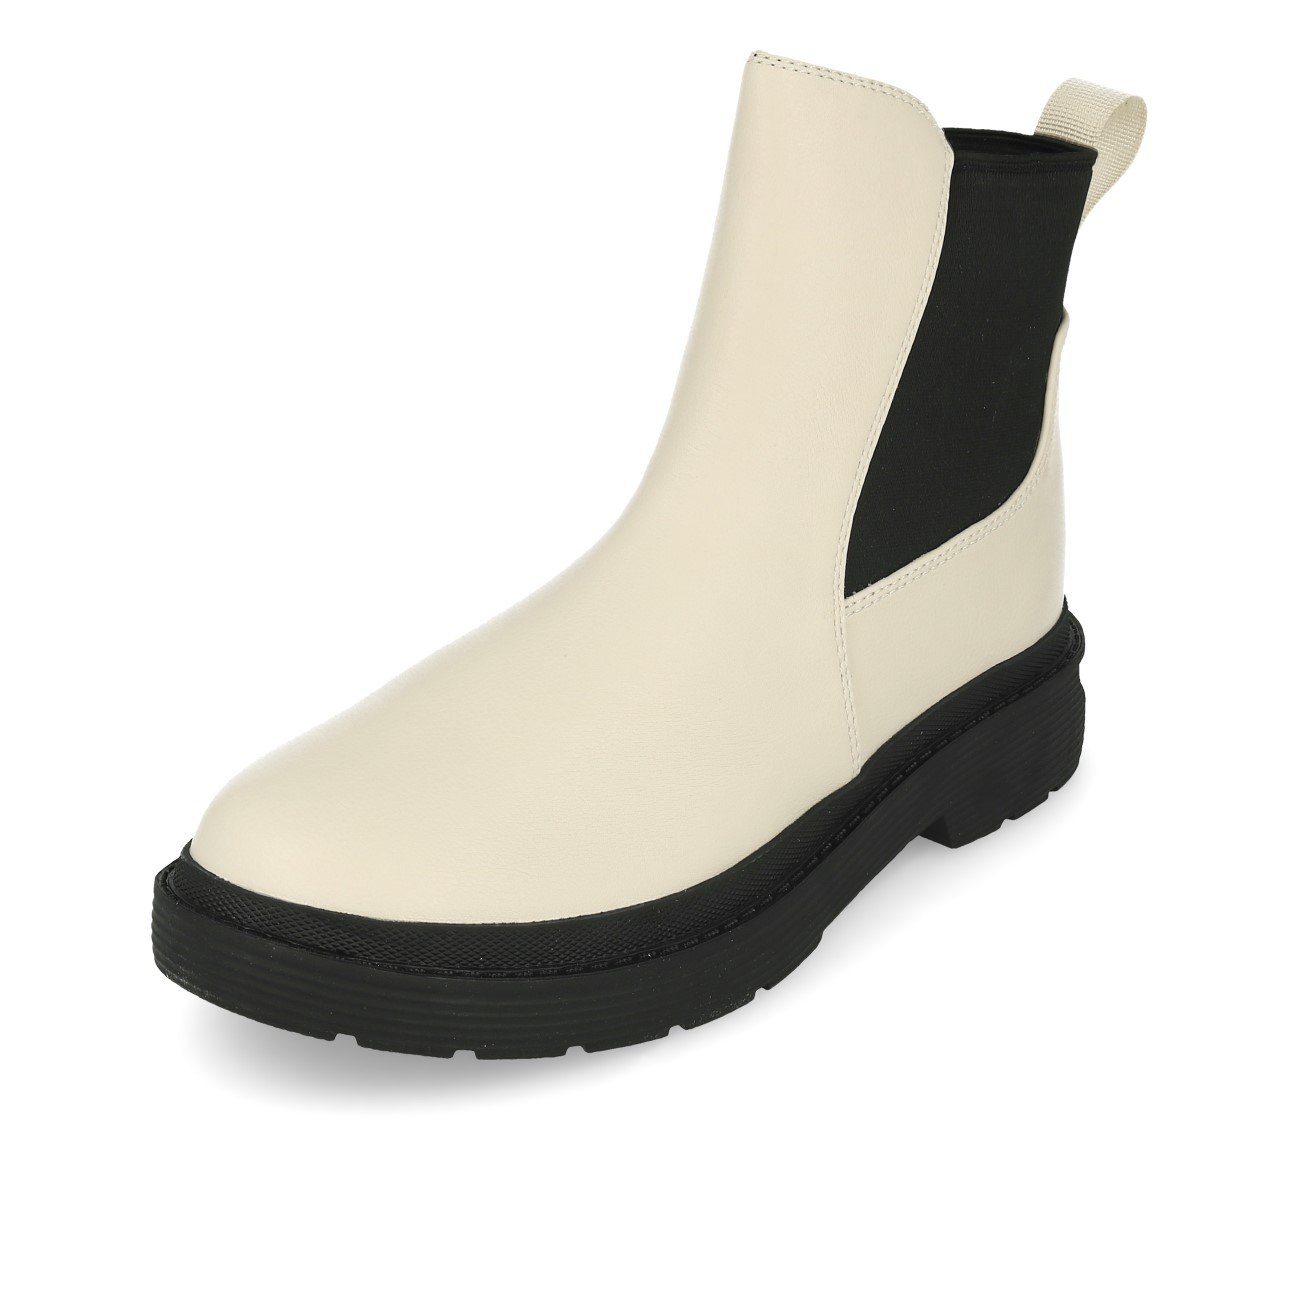 La Off La Strada 2003204 Pu Bootie Chelsea Ankleboots Damen Leather White Strada